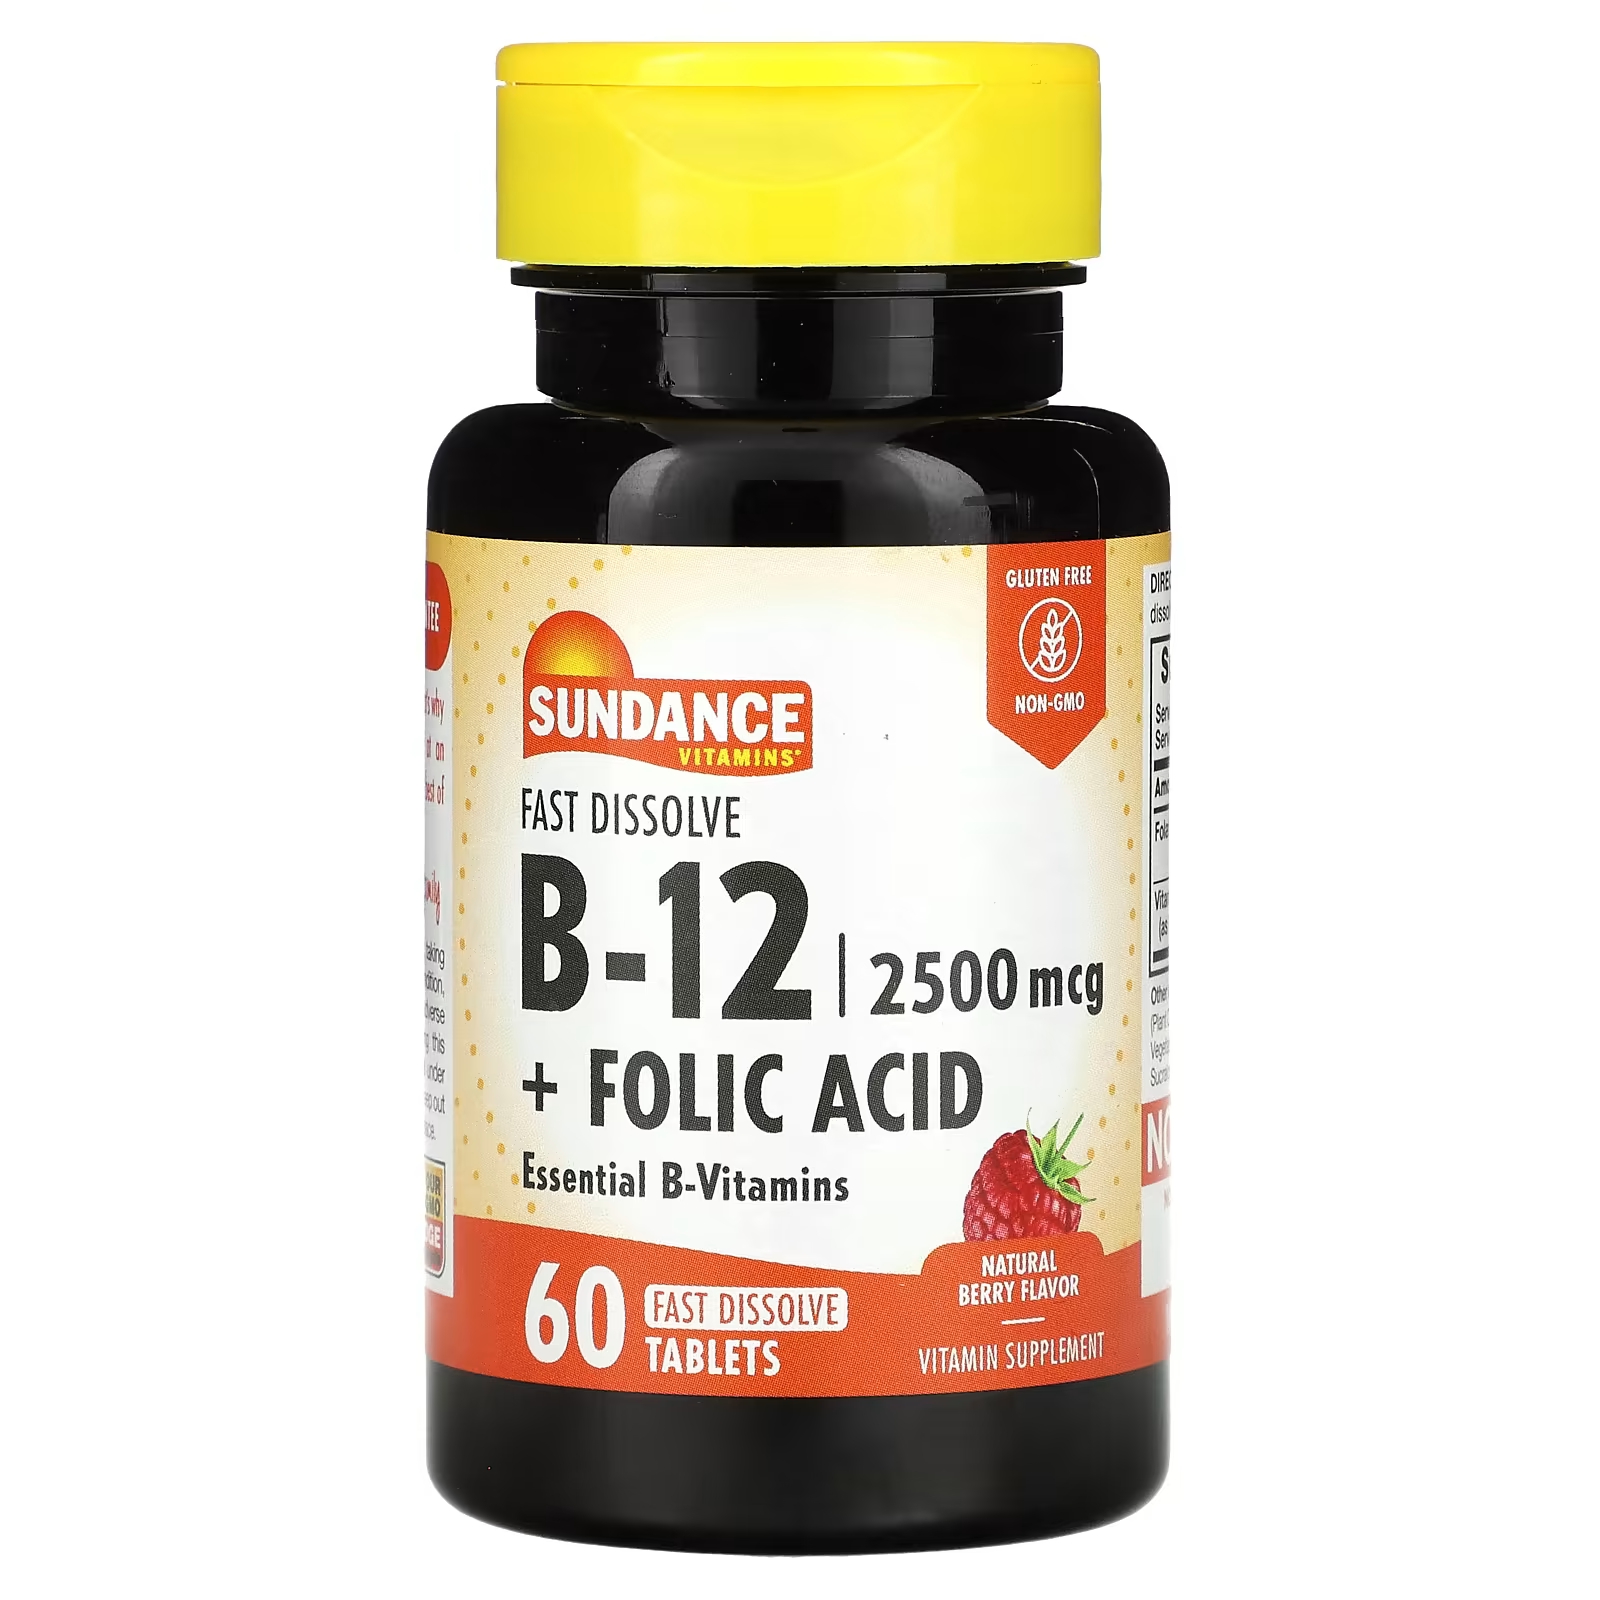 Витамины B-12 + фолиевая кислота Sundance Vitamins Natural Berry, 60 быстрорастворимых таблеток